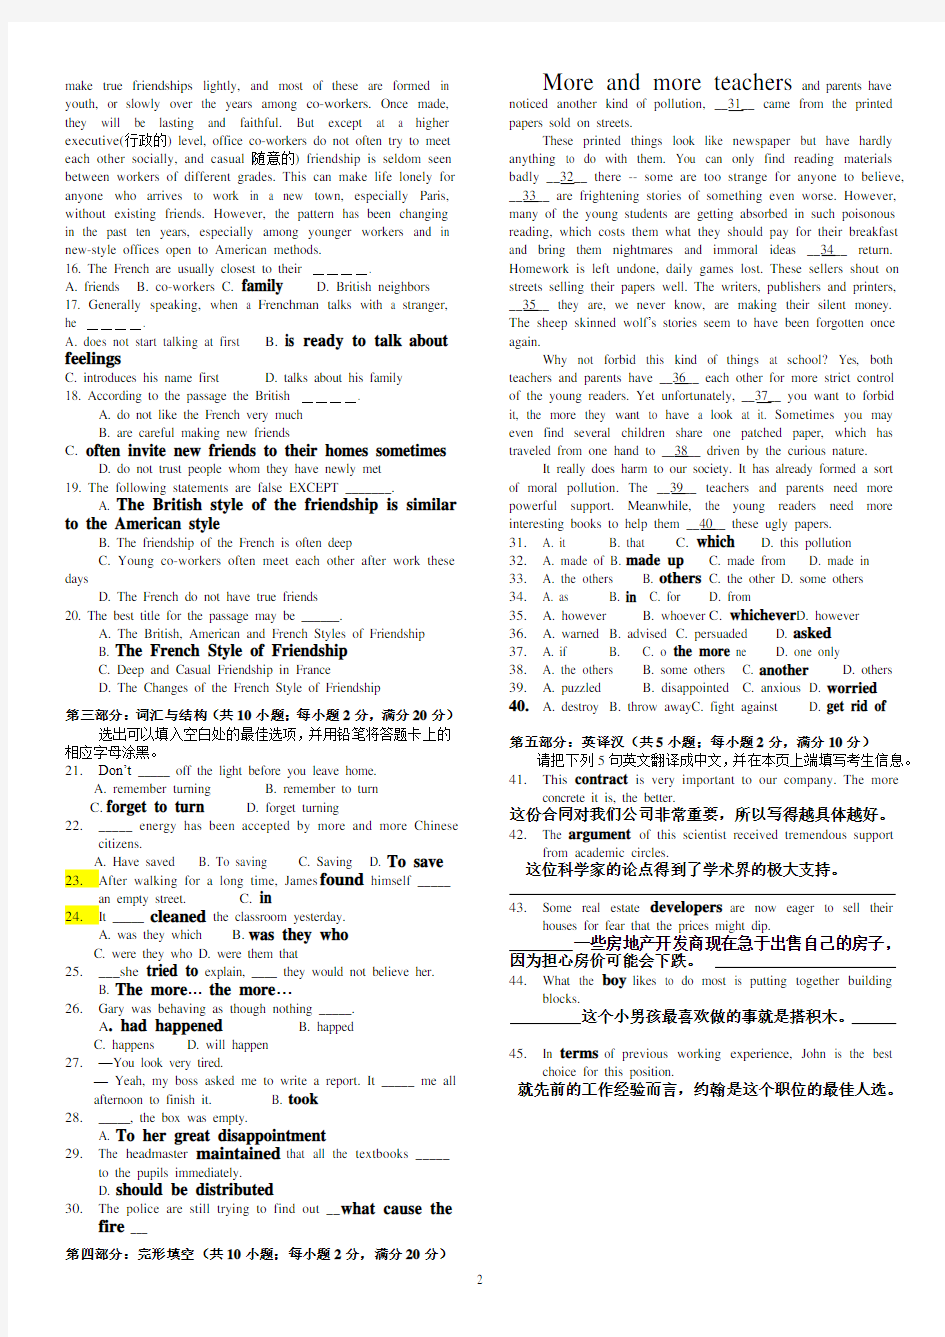 北京理工大学成人考试英语1_2018模拟题2缩印版小抄2(带答案)